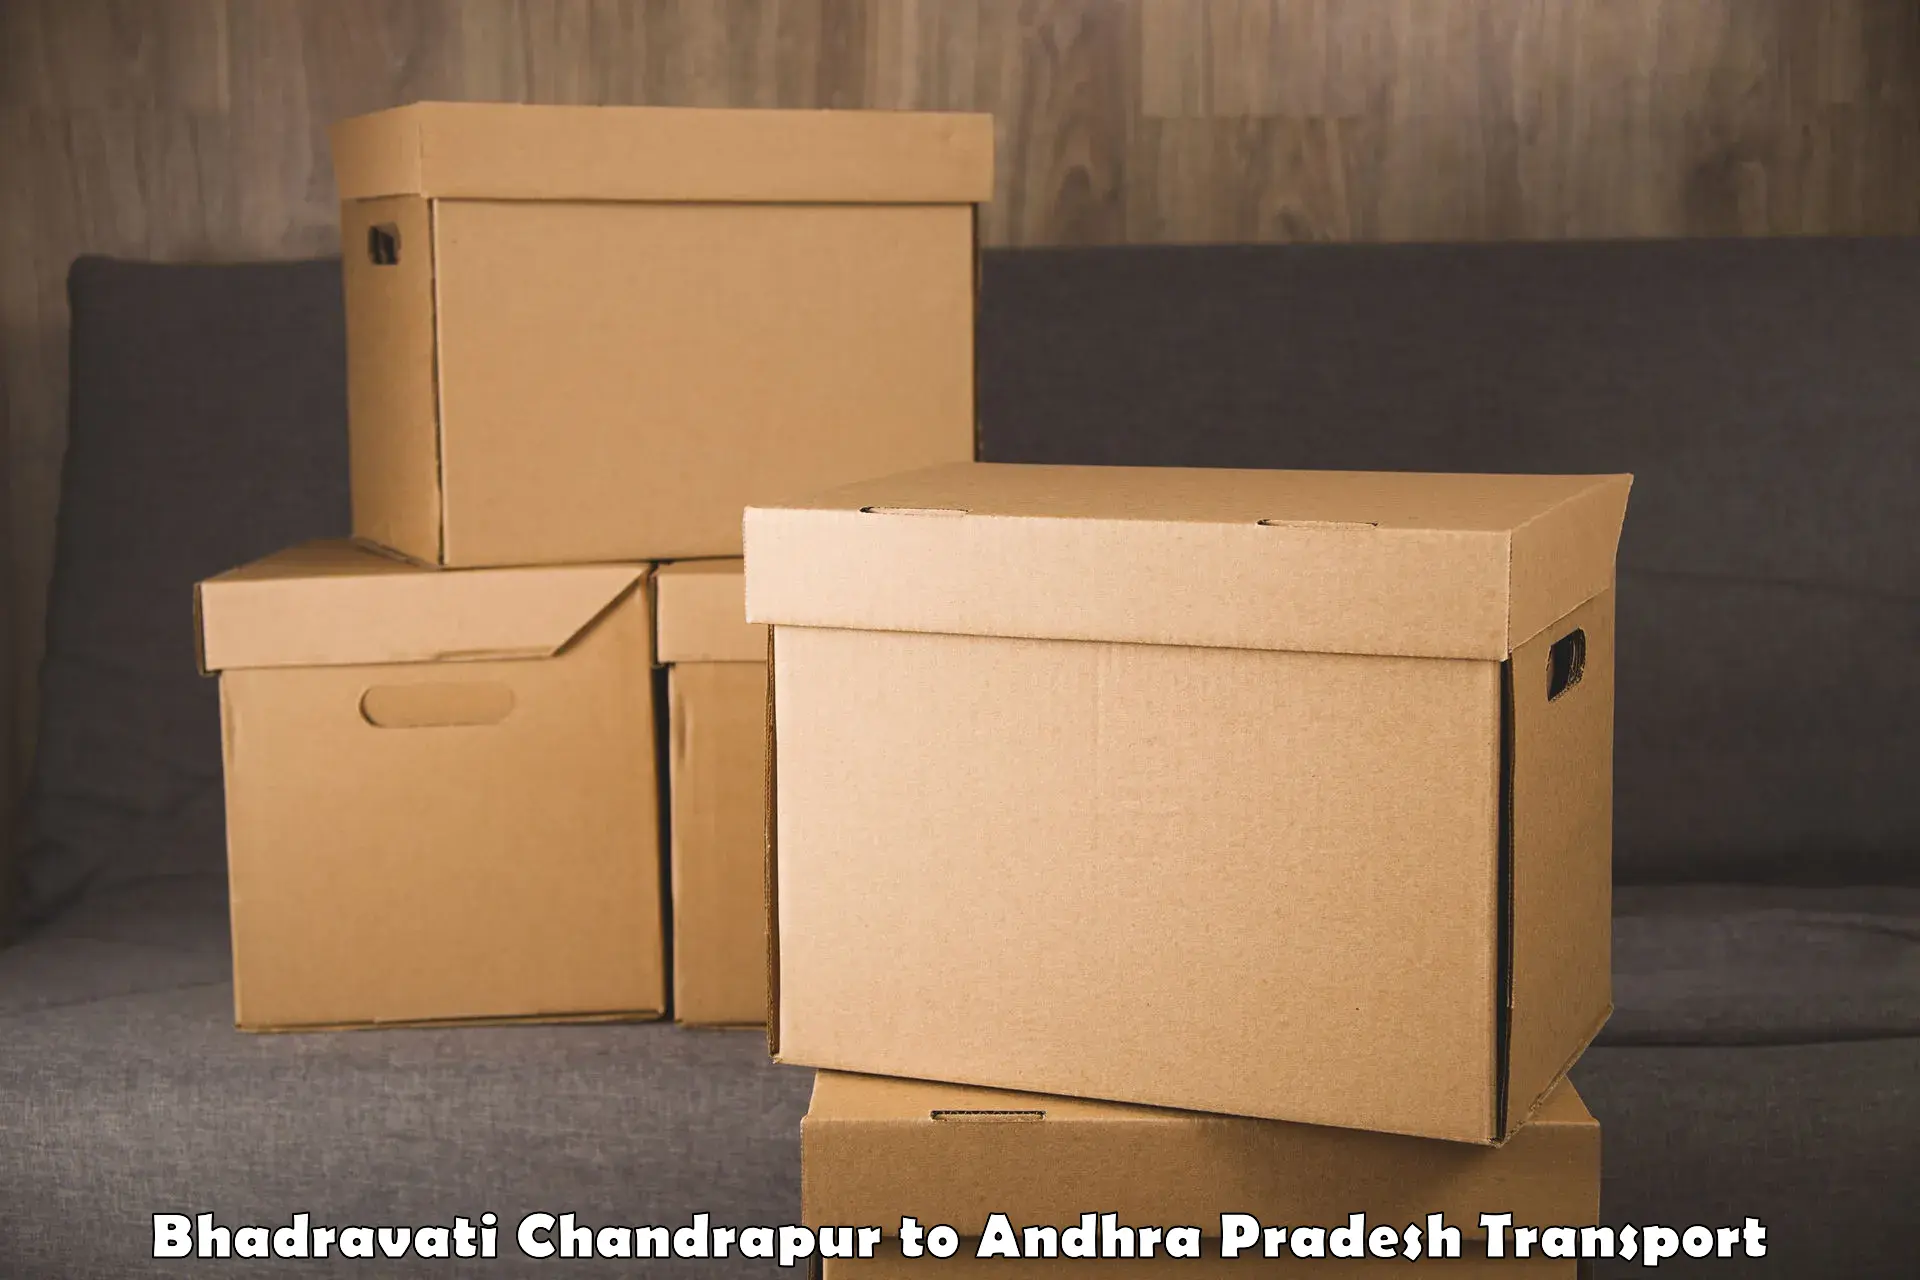 Truck transport companies in India Bhadravati Chandrapur to Guntakal